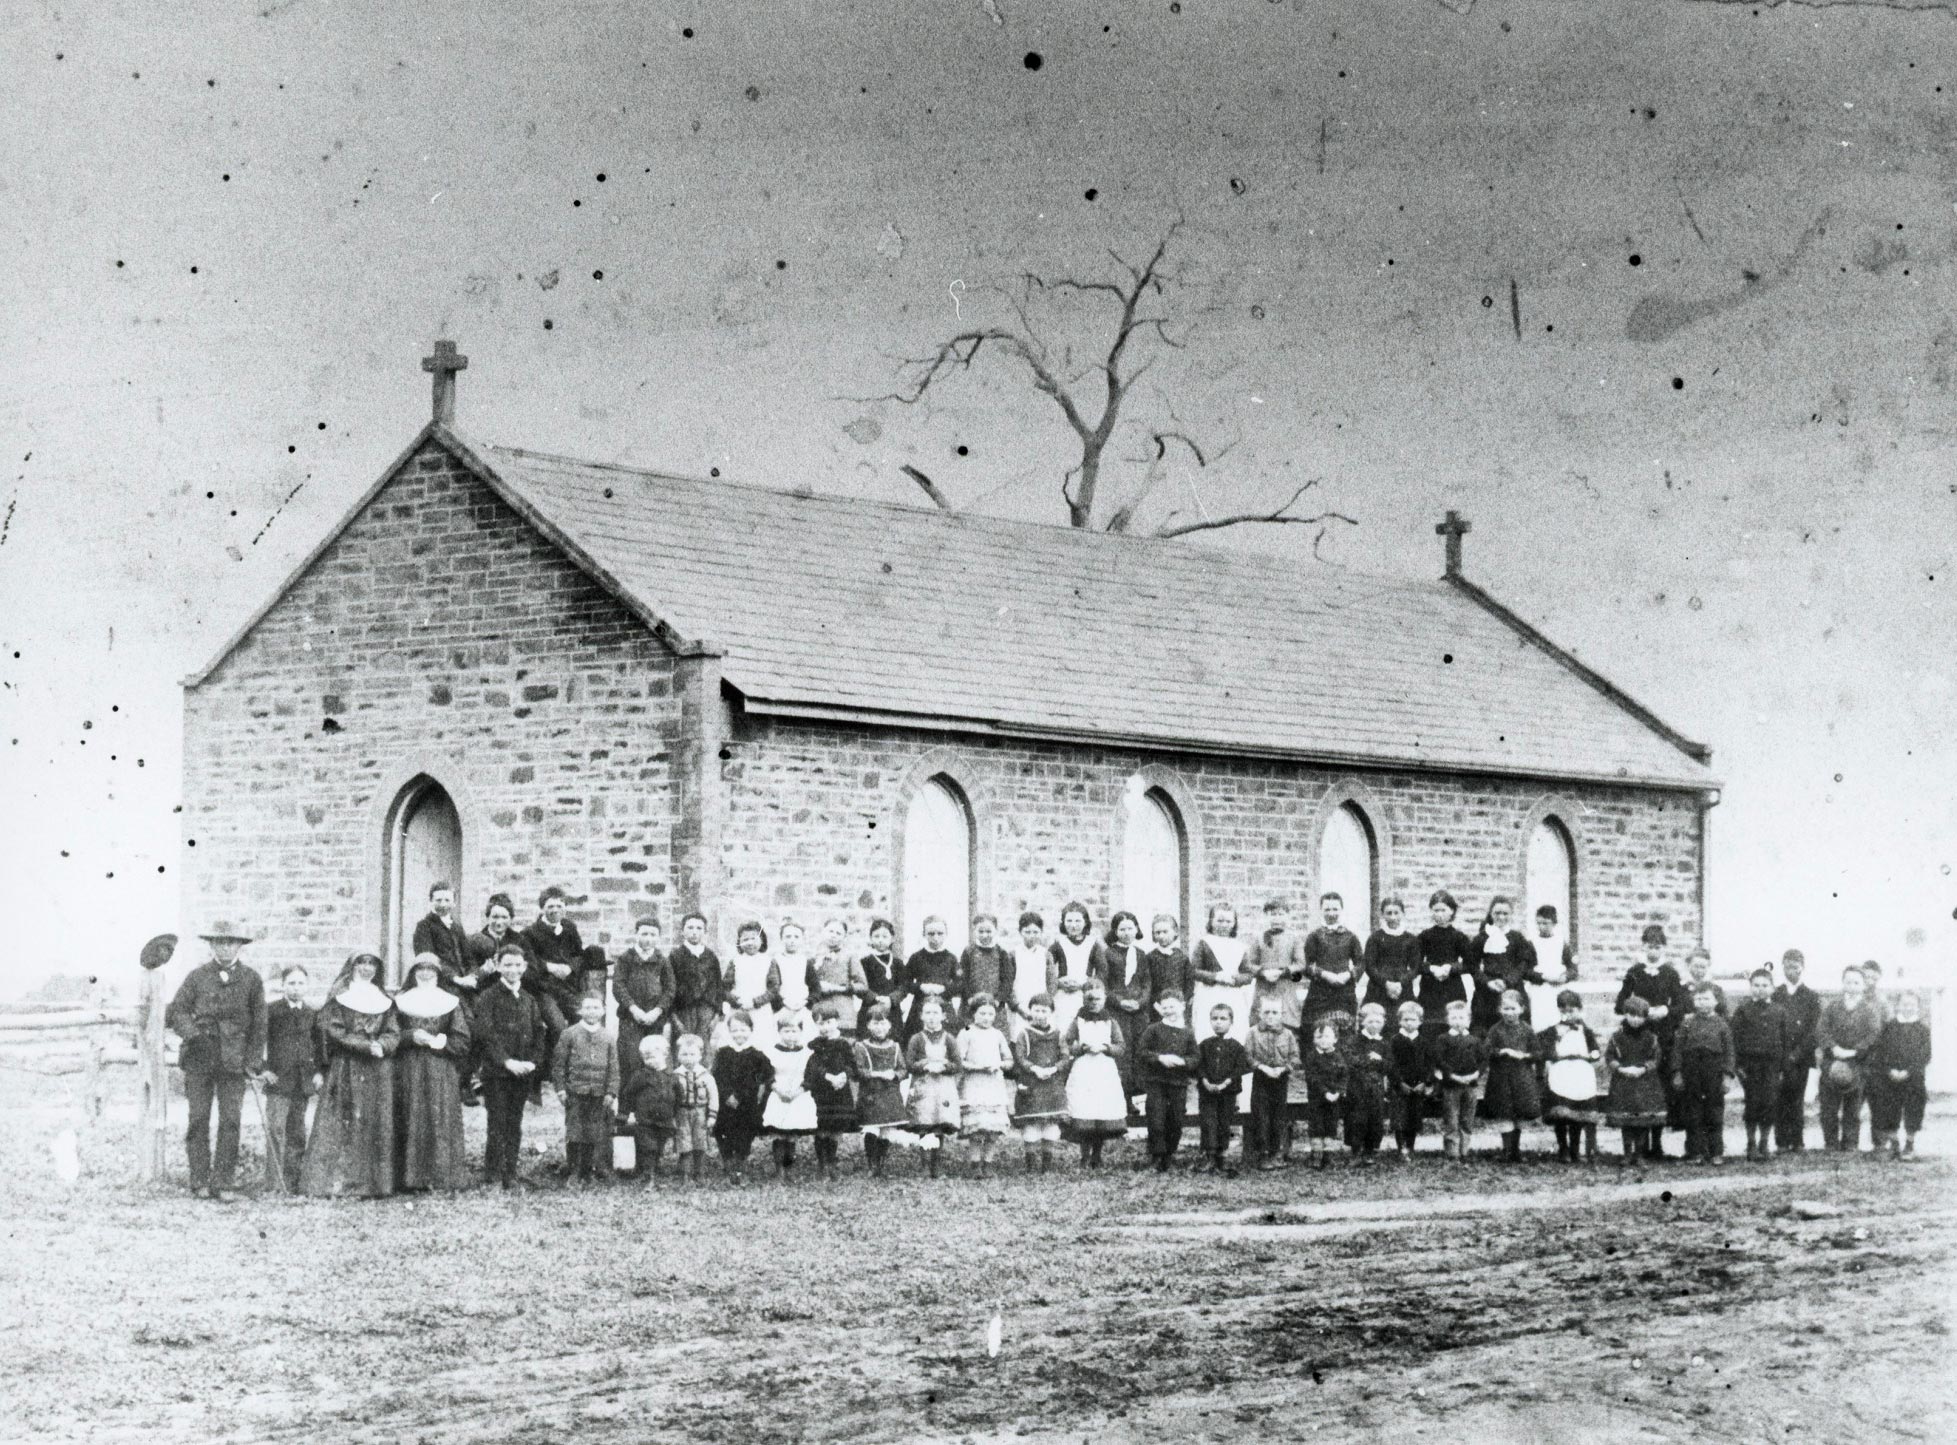 St Joseph’s Catholic School, Strathalbyn, South Australia, 1884.